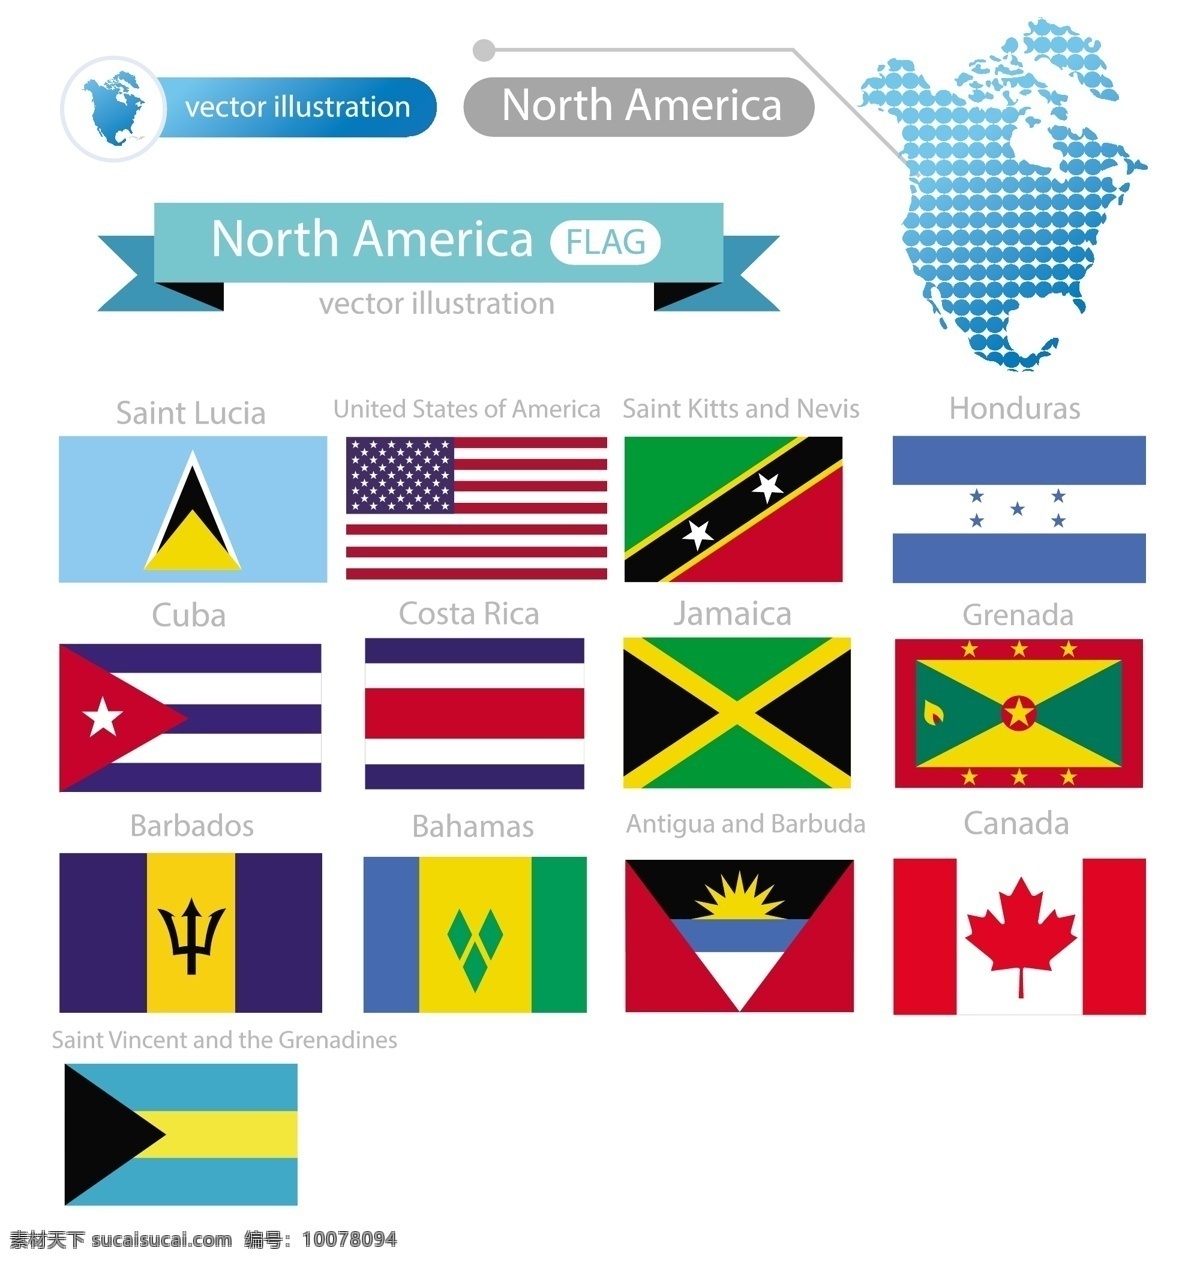 世界 国旗 矢量 合集 矢量素材 设计素材 背景素材 各国